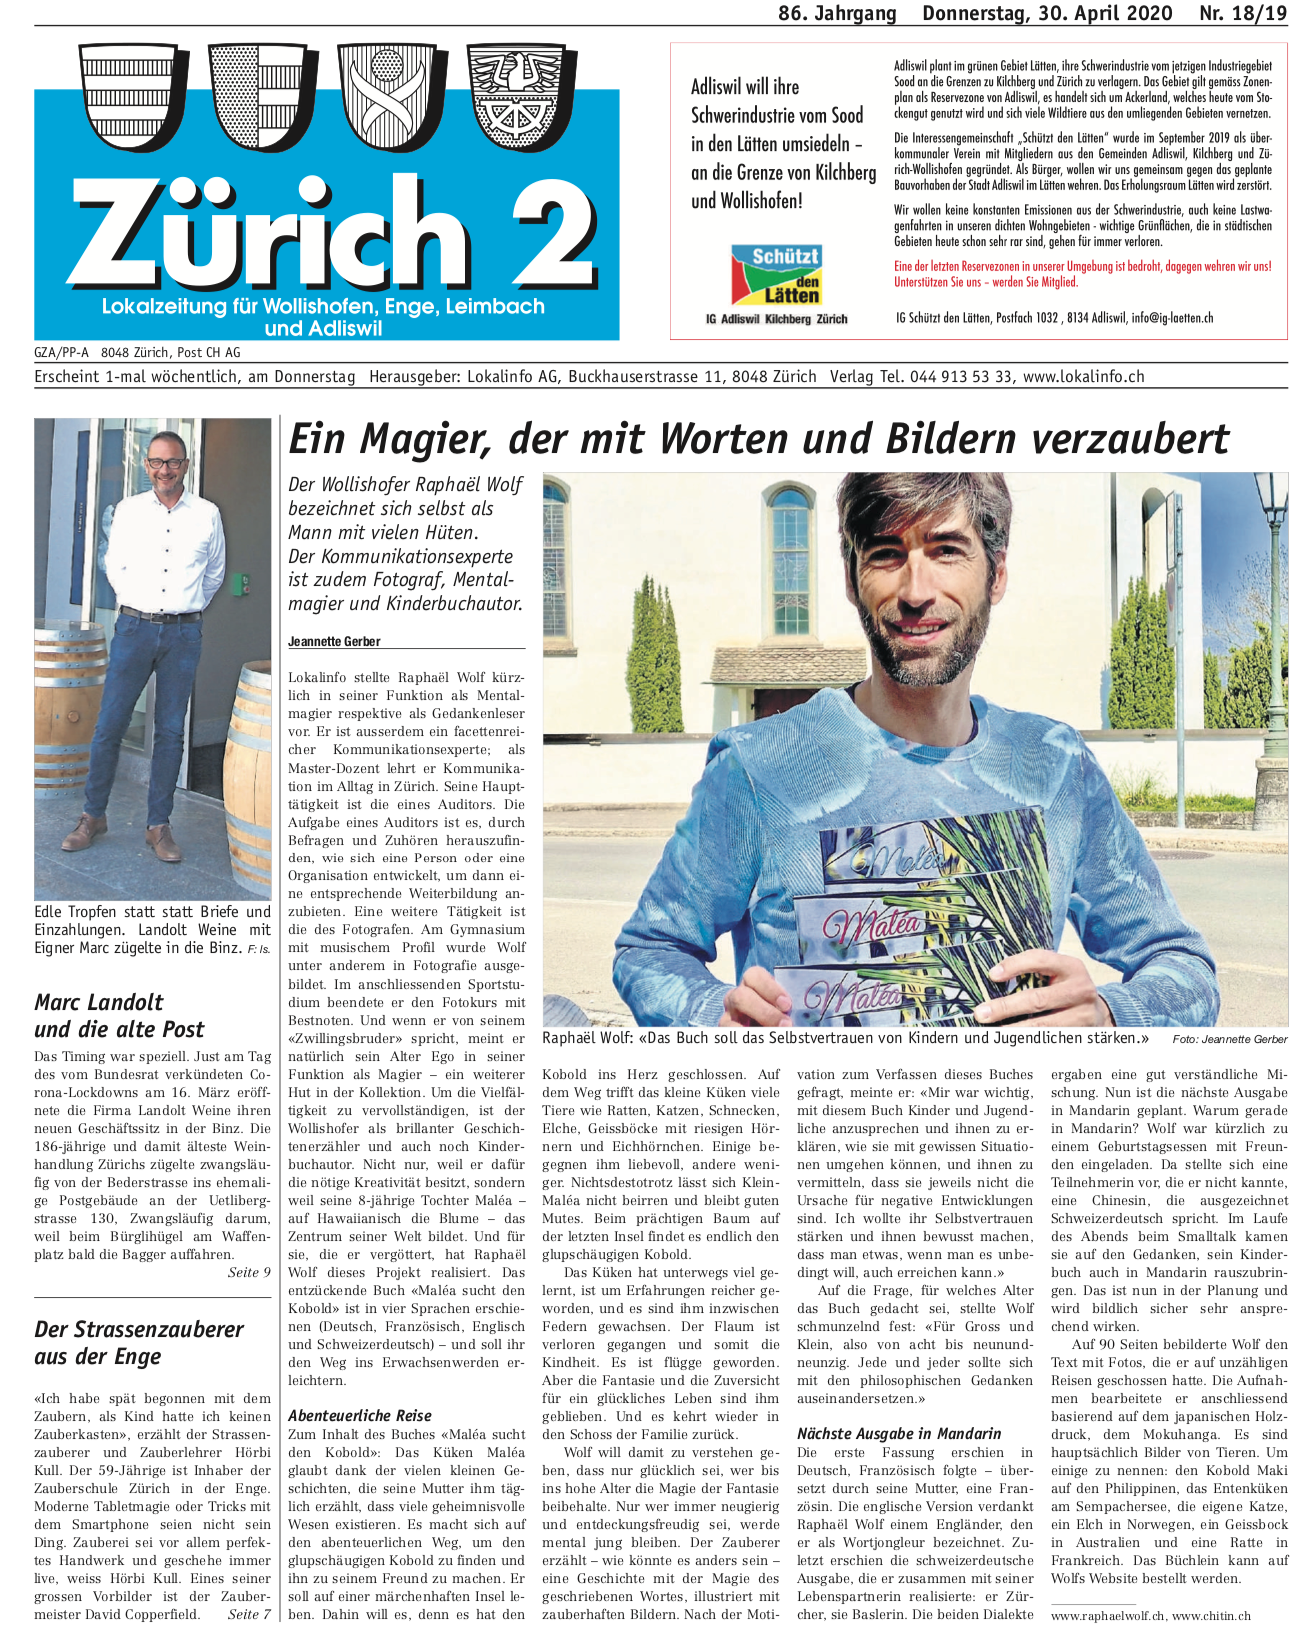 Maléa sucht den Kobold Raphaël Wolf in der Presse Zürich 2